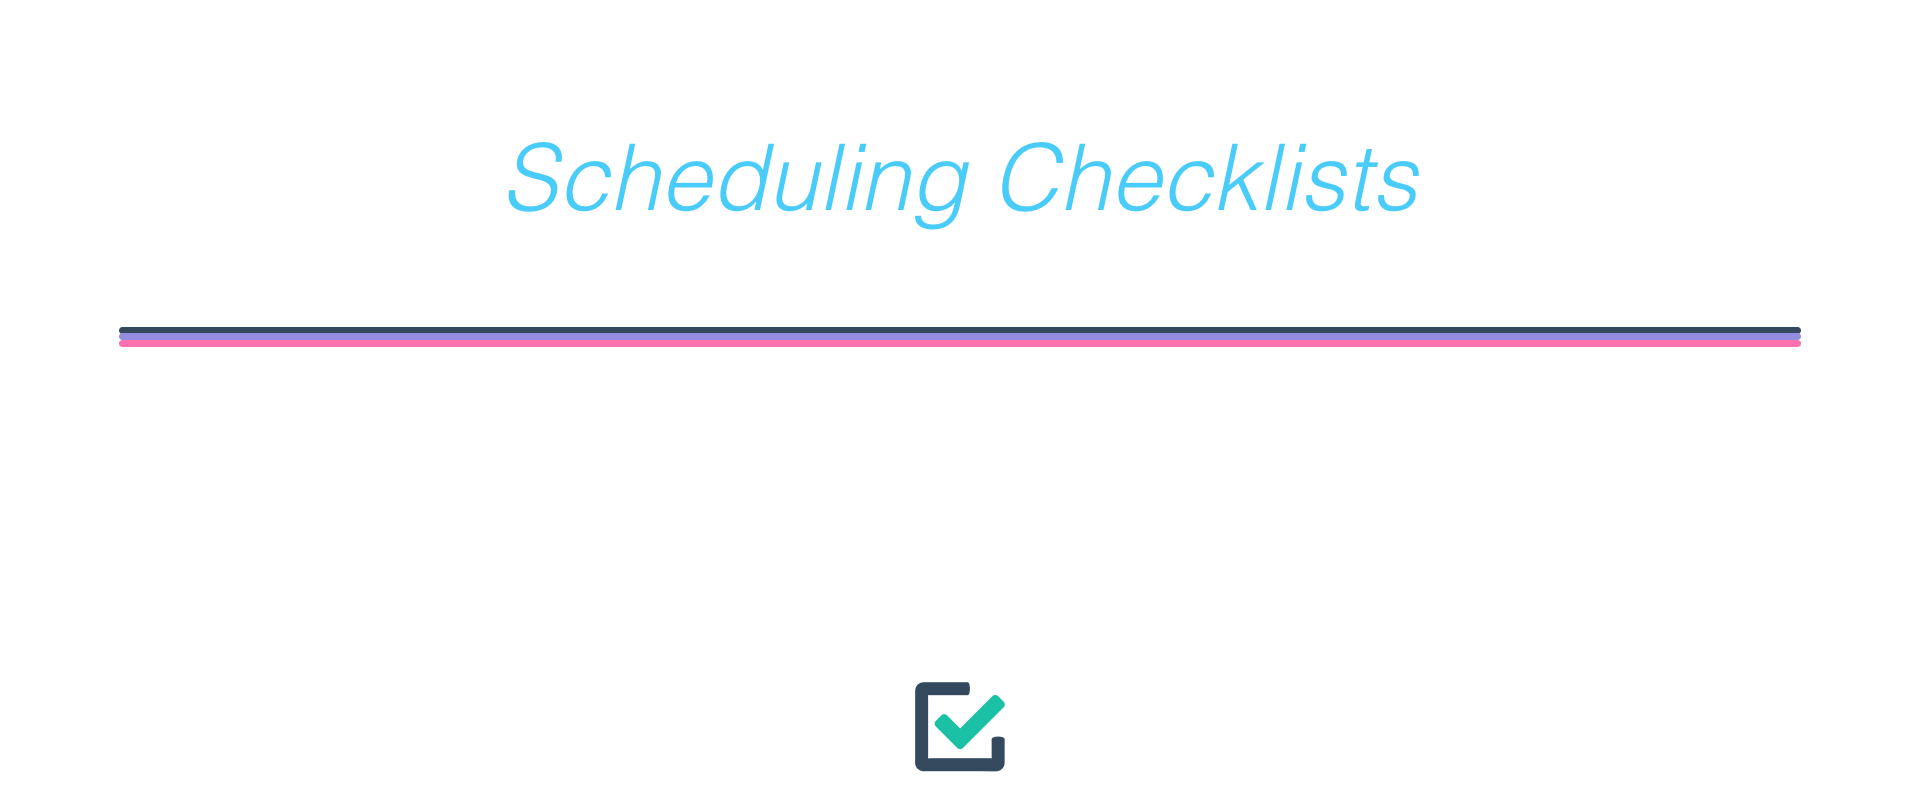 Scheduling checklists